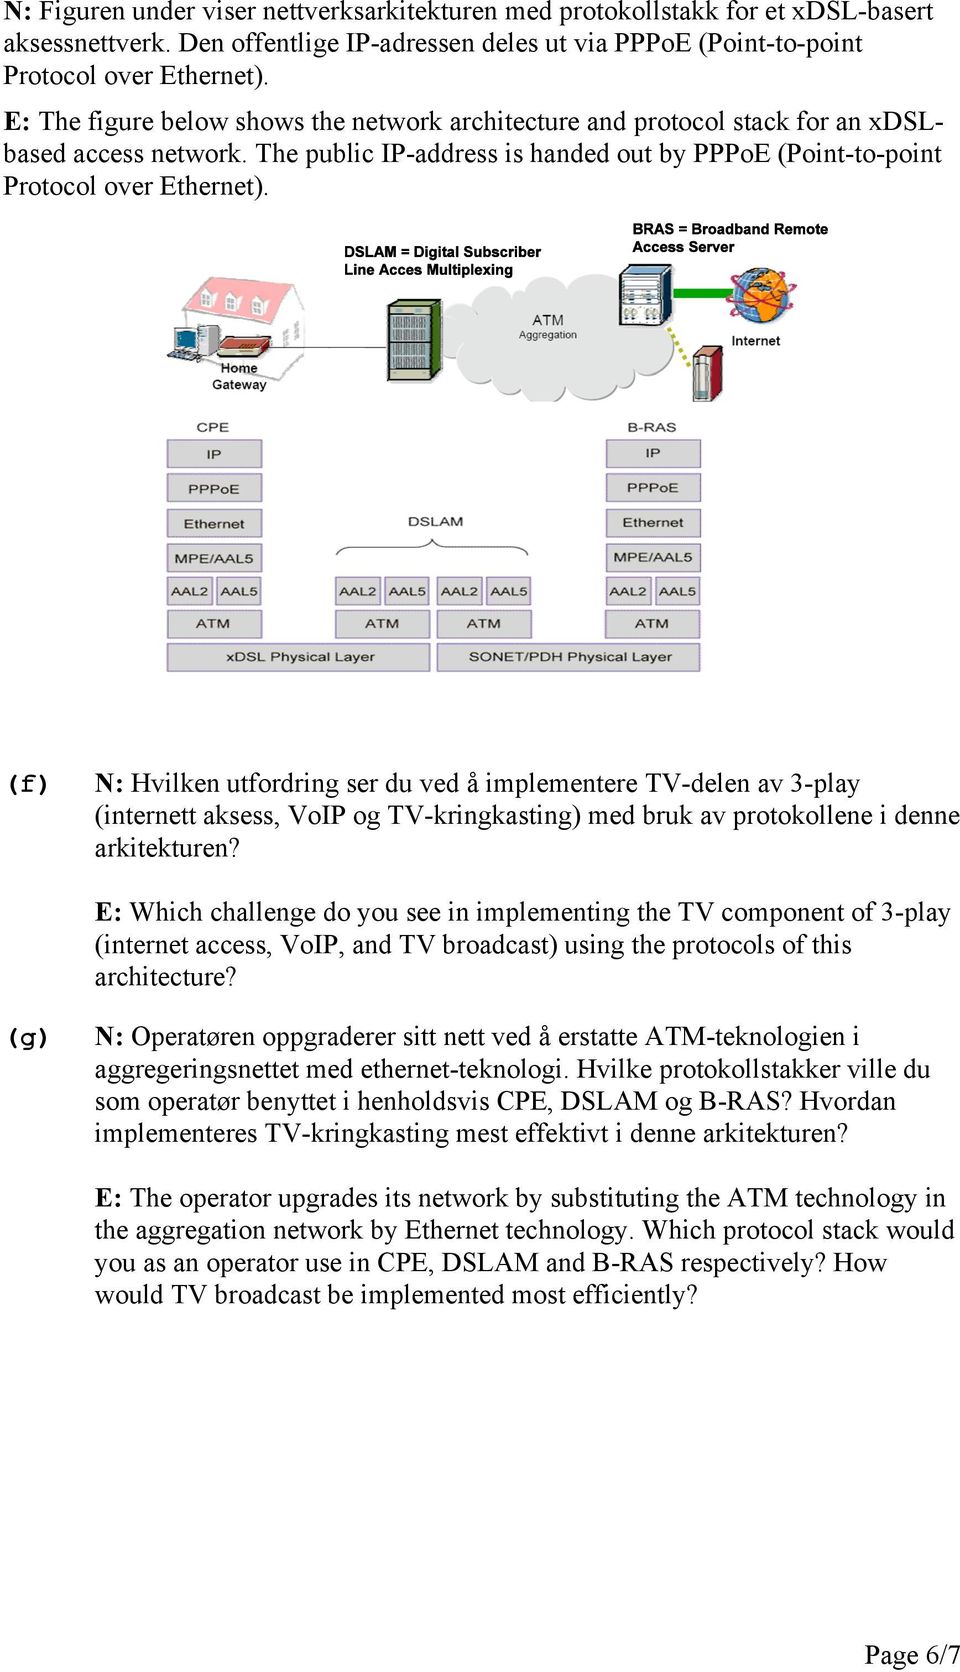 (f) N: Hvilken utfordring ser du ved å implementere TV-delen av 3-play (internett aksess, VoIP og TV-kringkasting) med bruk av protokollene i denne arkitekturen?